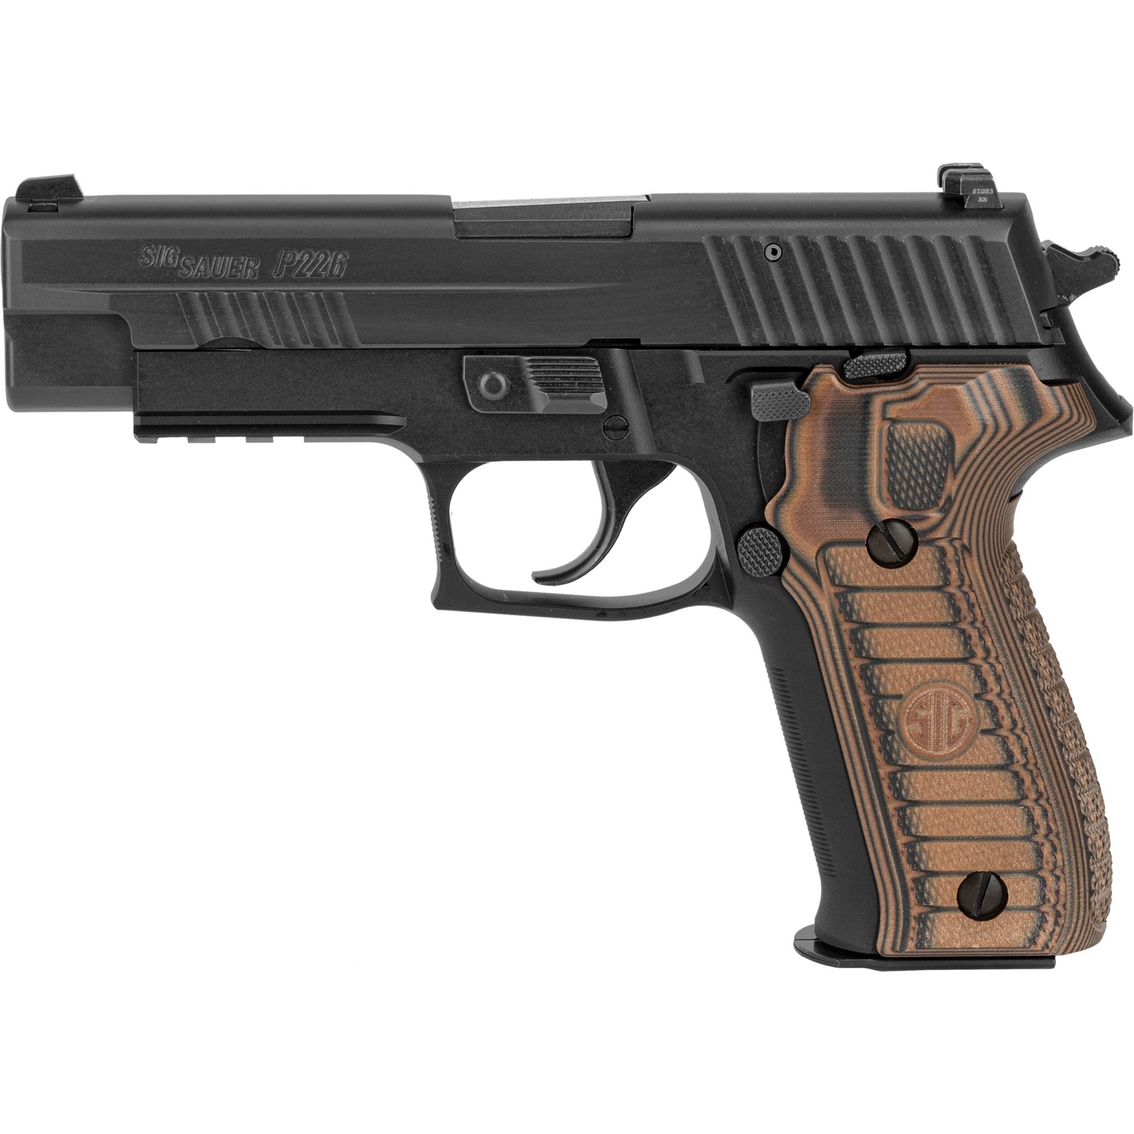 Sig Sauer P226 Select 9mm 4.4 in. Barrel 15 Rnd 2 Mag Pistol Black - Image 2 of 3